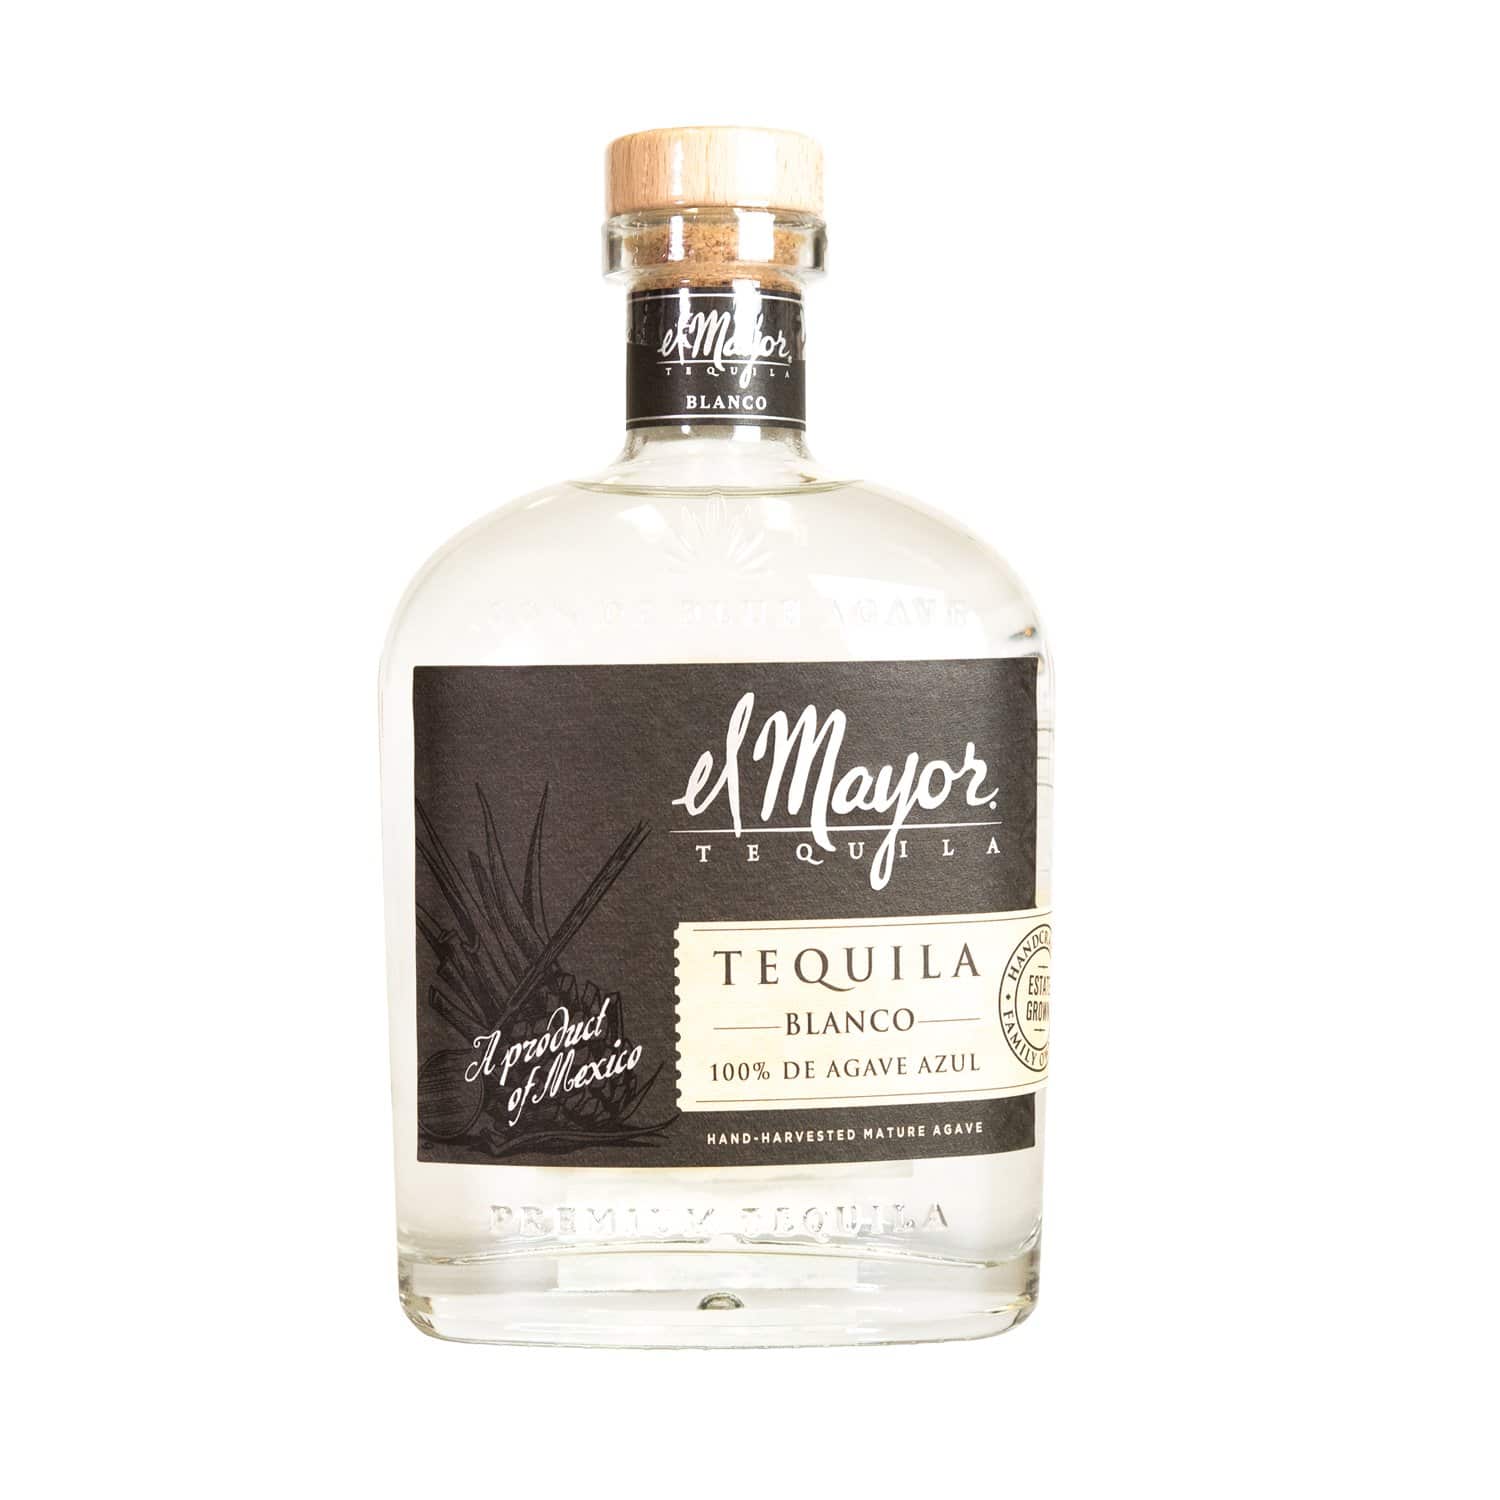 El Mayor - Tequila Blanco